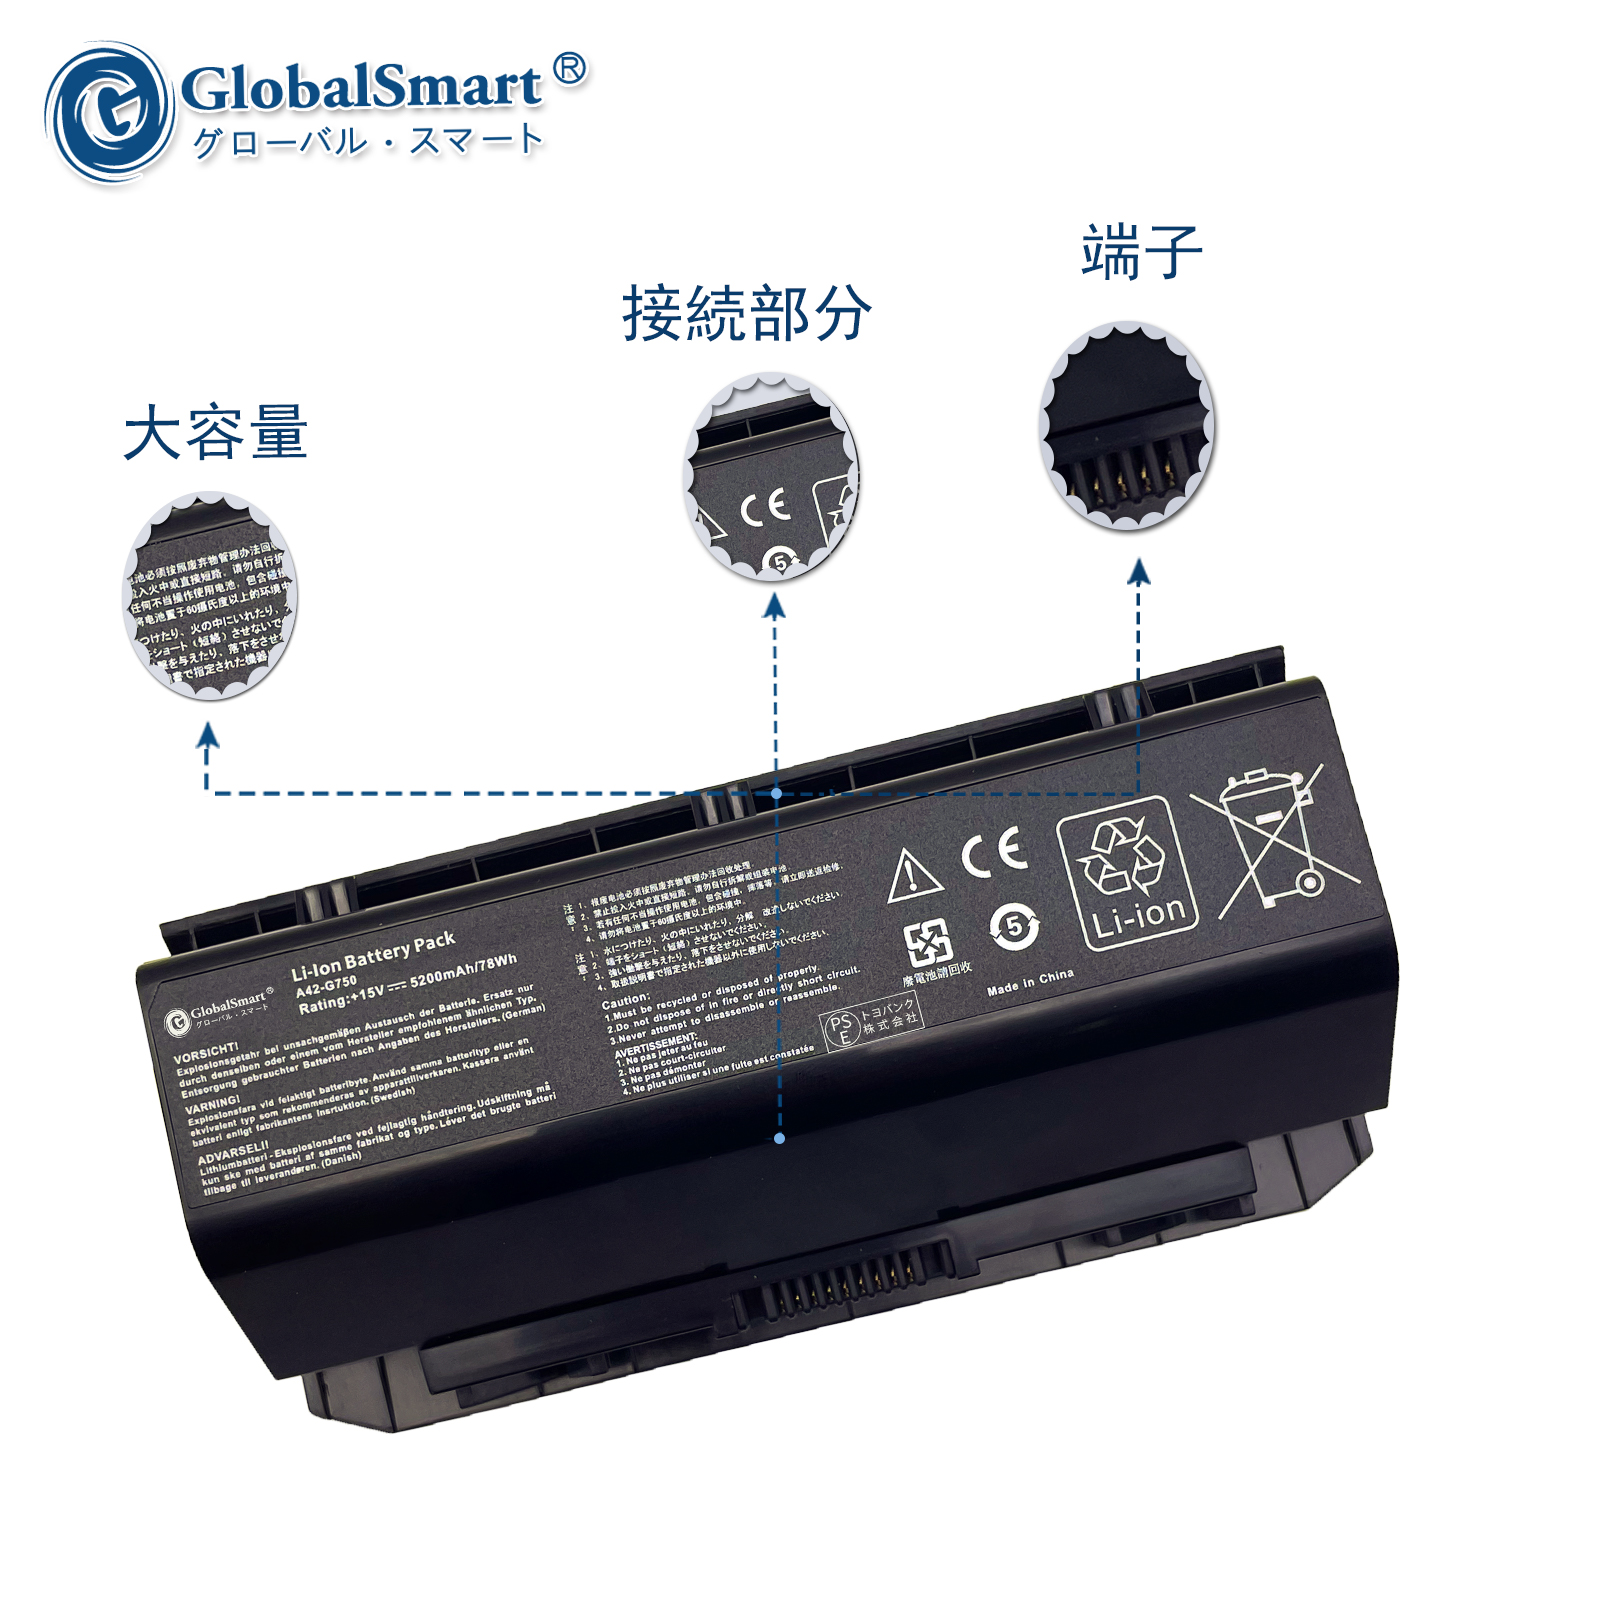 【楽天市場】【新品1年保証】Asus G750JS Series 対応用 互換バッテリー【5200mAh 15V】GlobalSmart高性能 ノートパソコン 交換バッテリー PSE認証済み